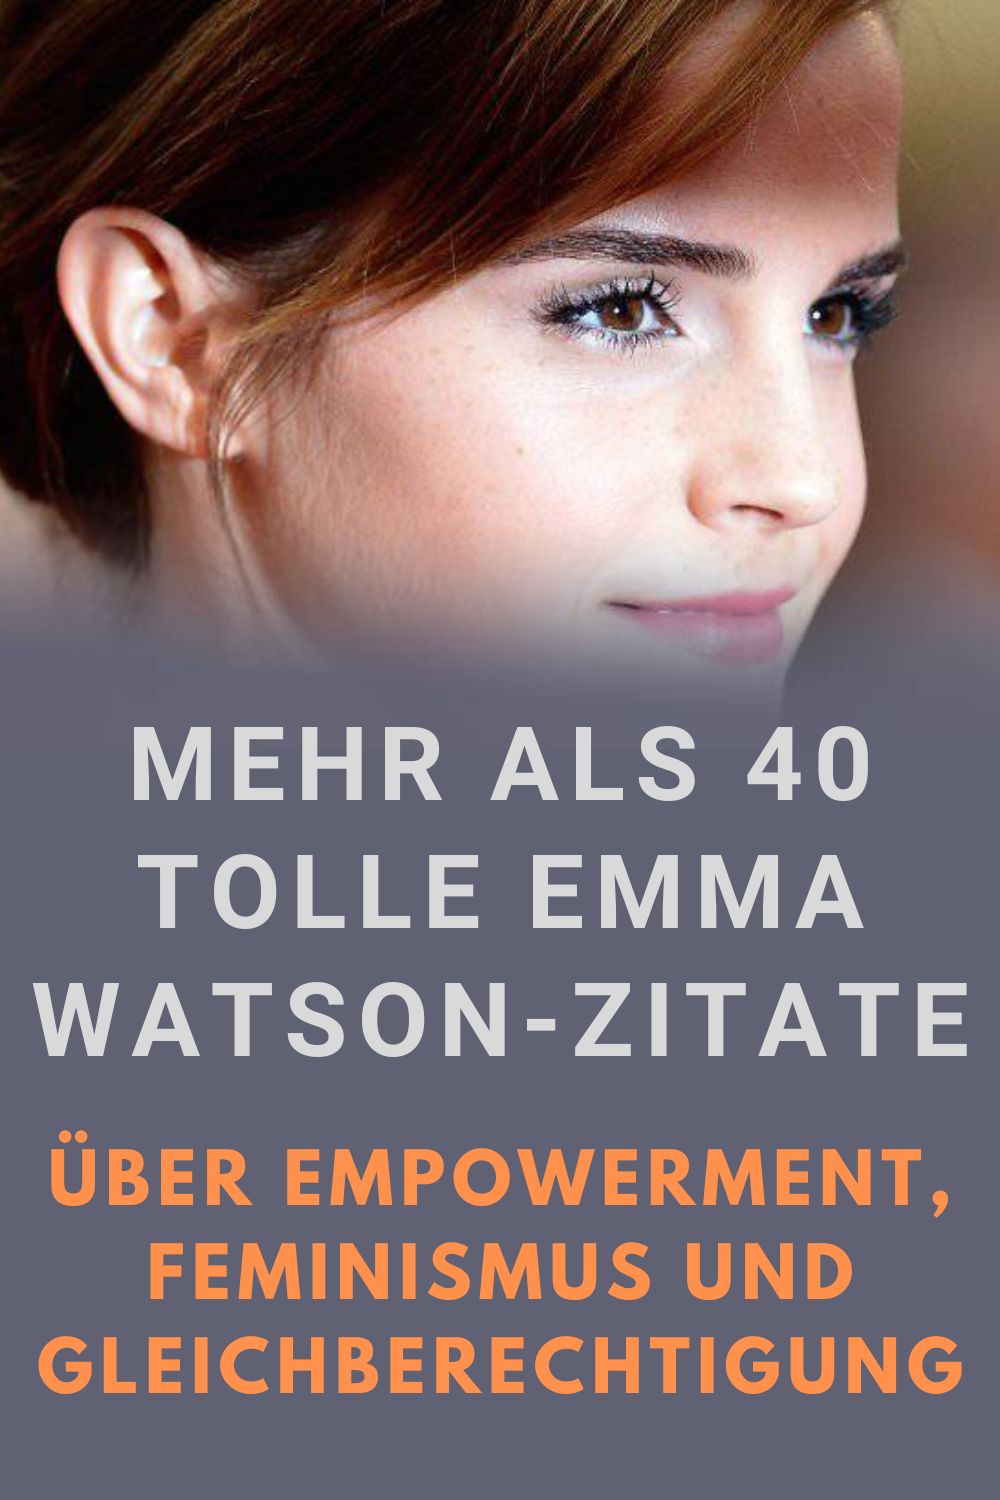 Mehr-als-40-tolle-Emma-Watson-Zitate-ueber-Empowerment-Feminismus-und-Gleichberechtigung